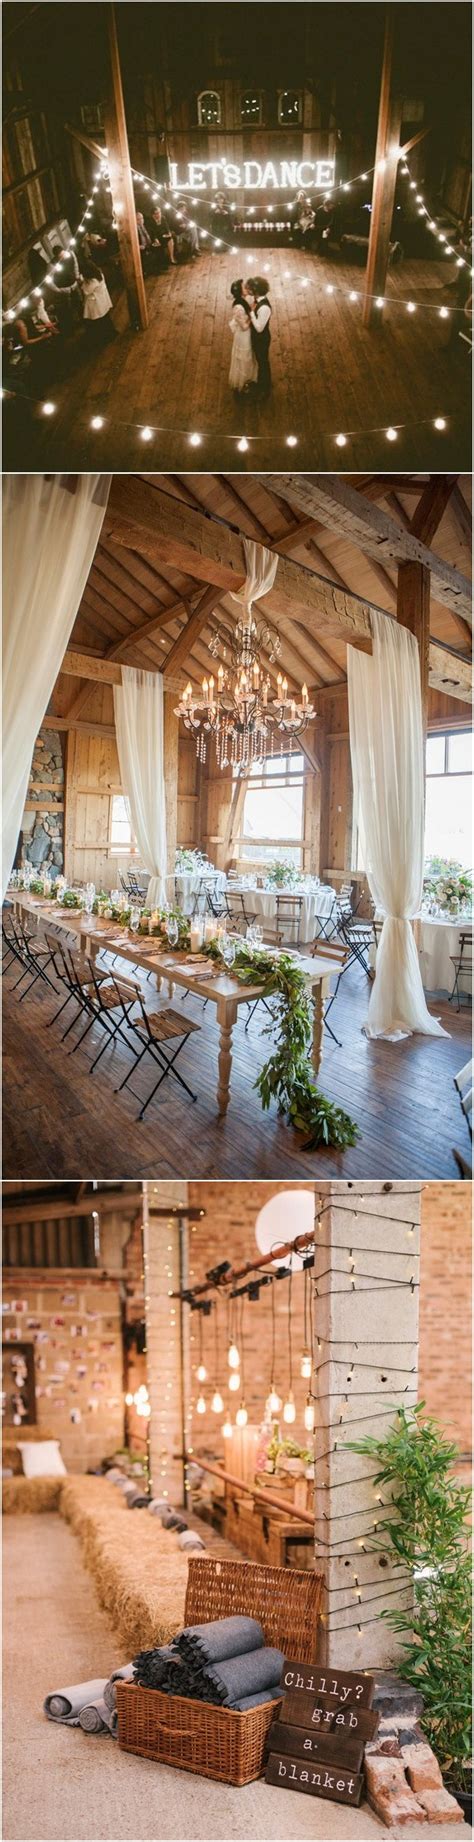 20 Gorgeous Ideas For A Rustic Barn Wedding Emma Loves Weddings